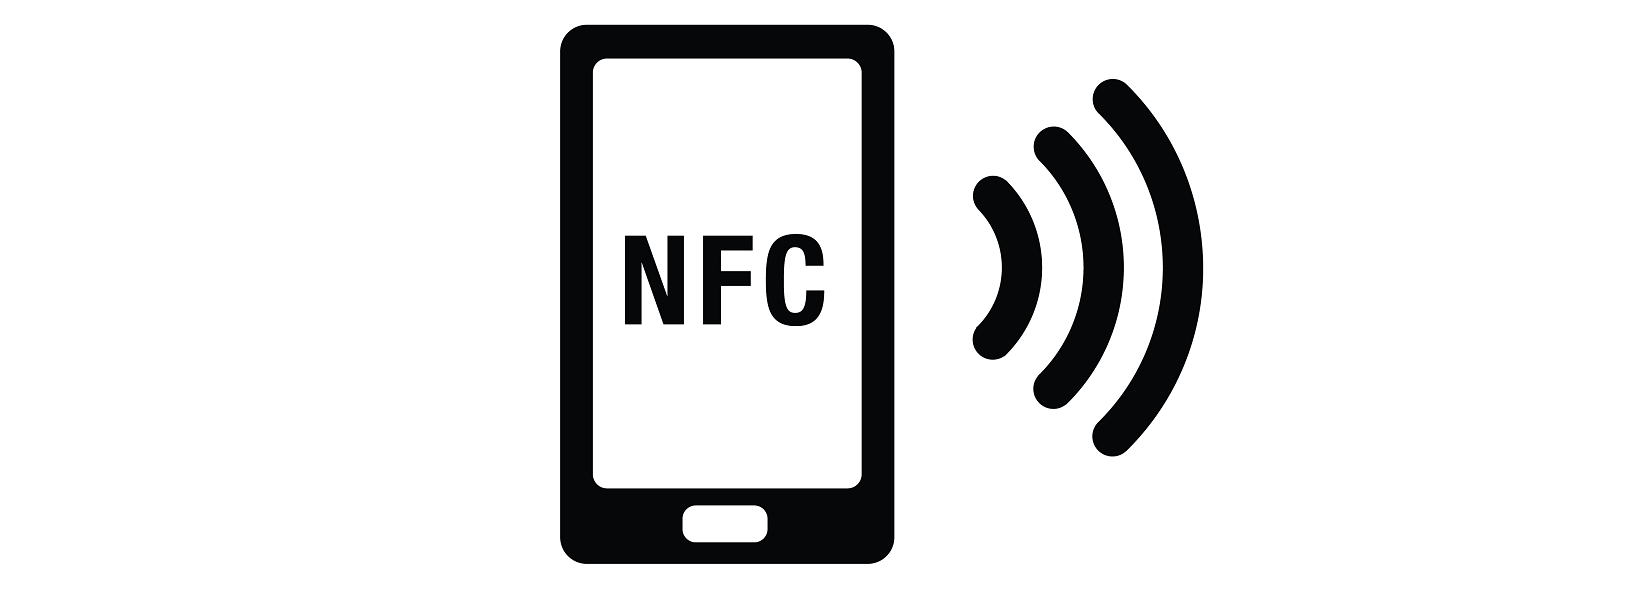 NFC Logo - Free Near Field Communication Icon 371317. Download Near Field